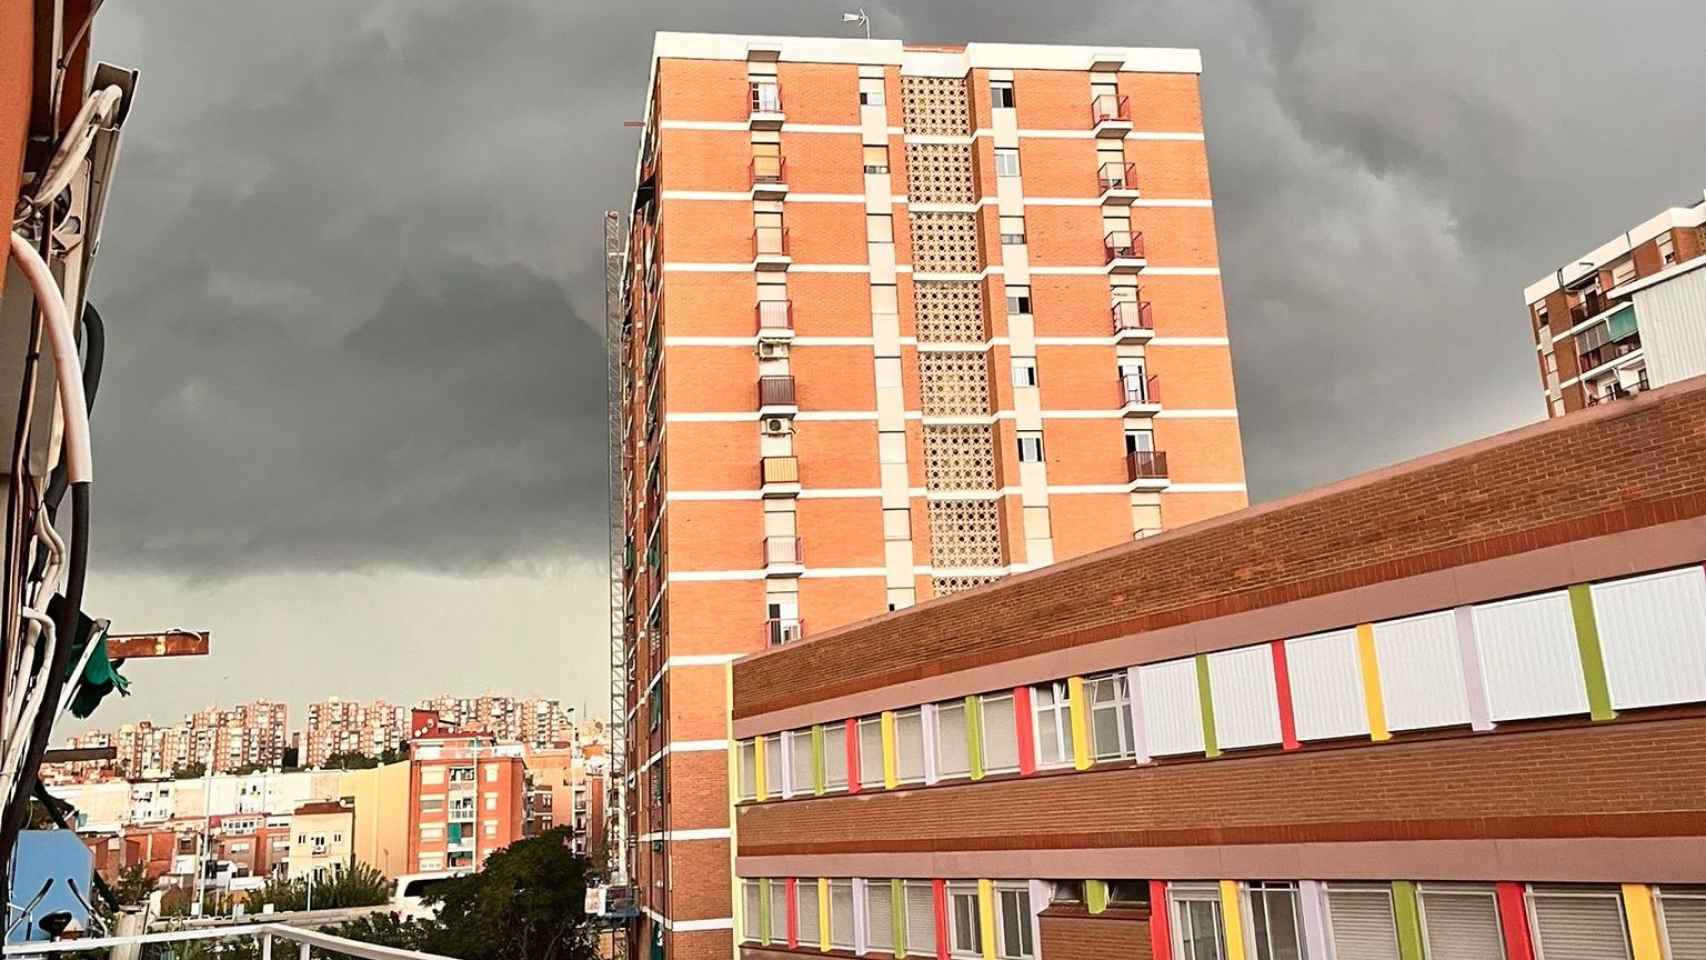 Imagen de la tormenta antes de una tromba de agua desde un edificio de viviendas del barrio de Sant Roc de Badalona / METRÓPOLI